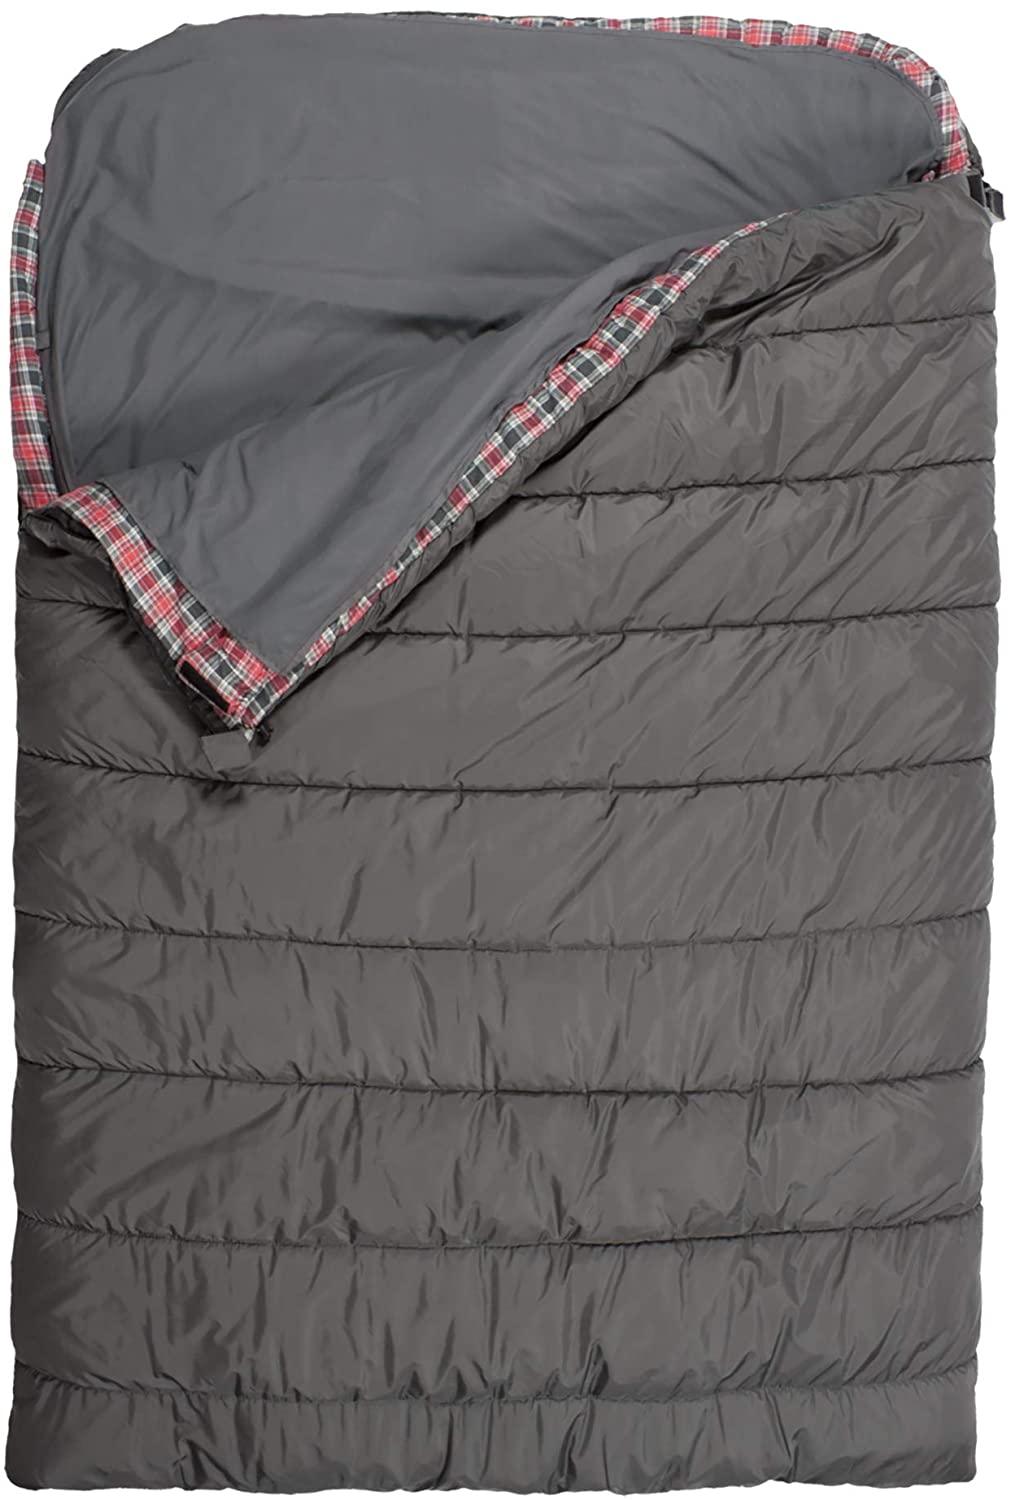 NT-sleeping bag liner312-2.jpg